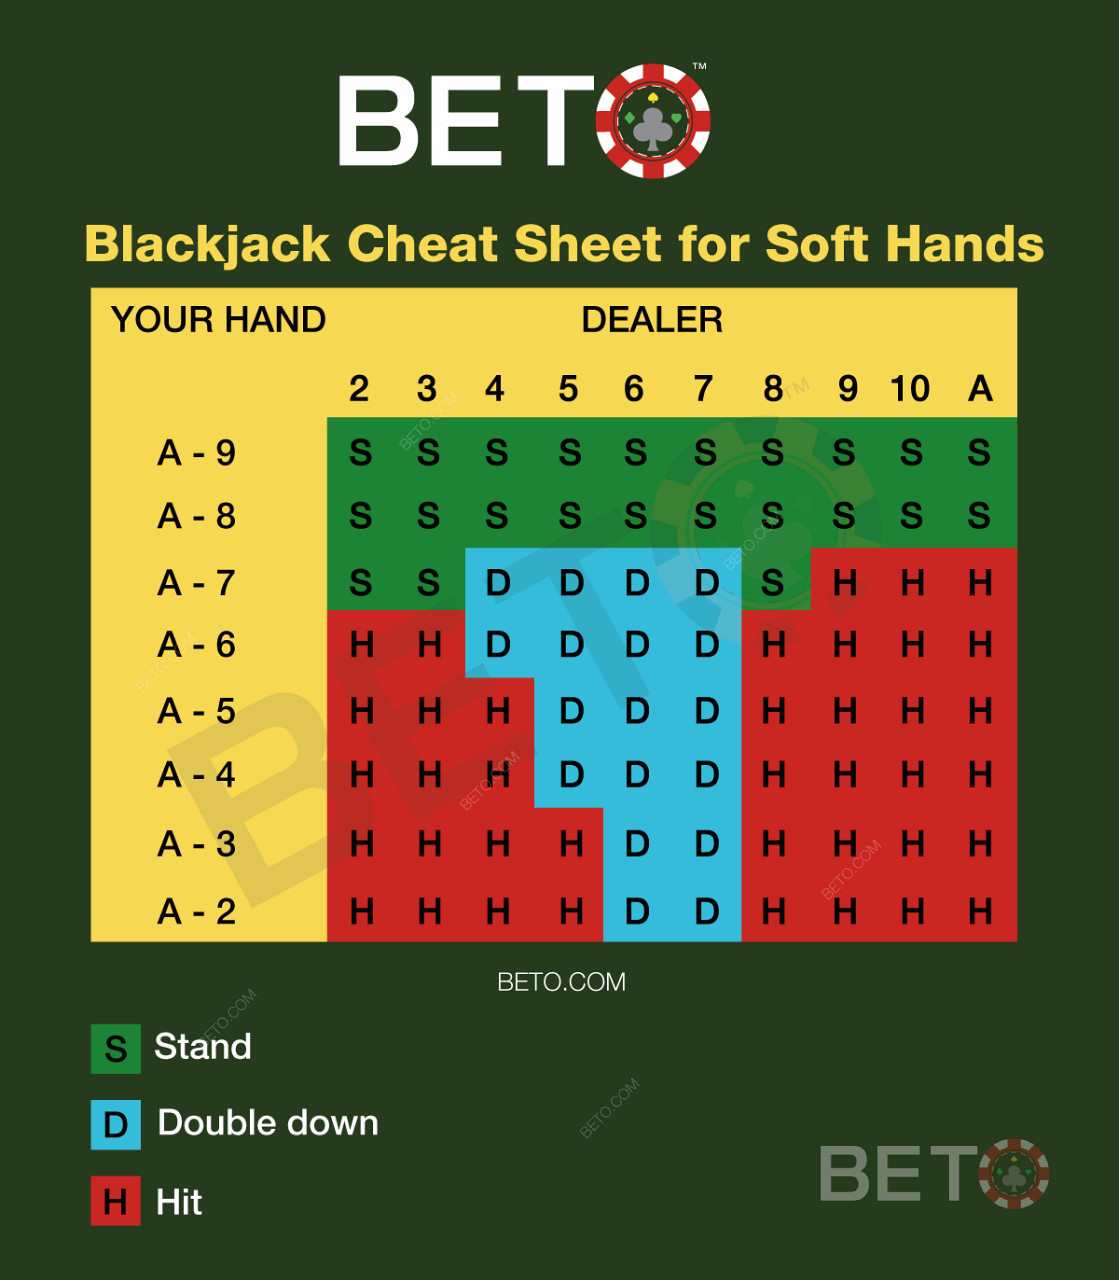 Blackjacktabell för mjuka händer i blackjack